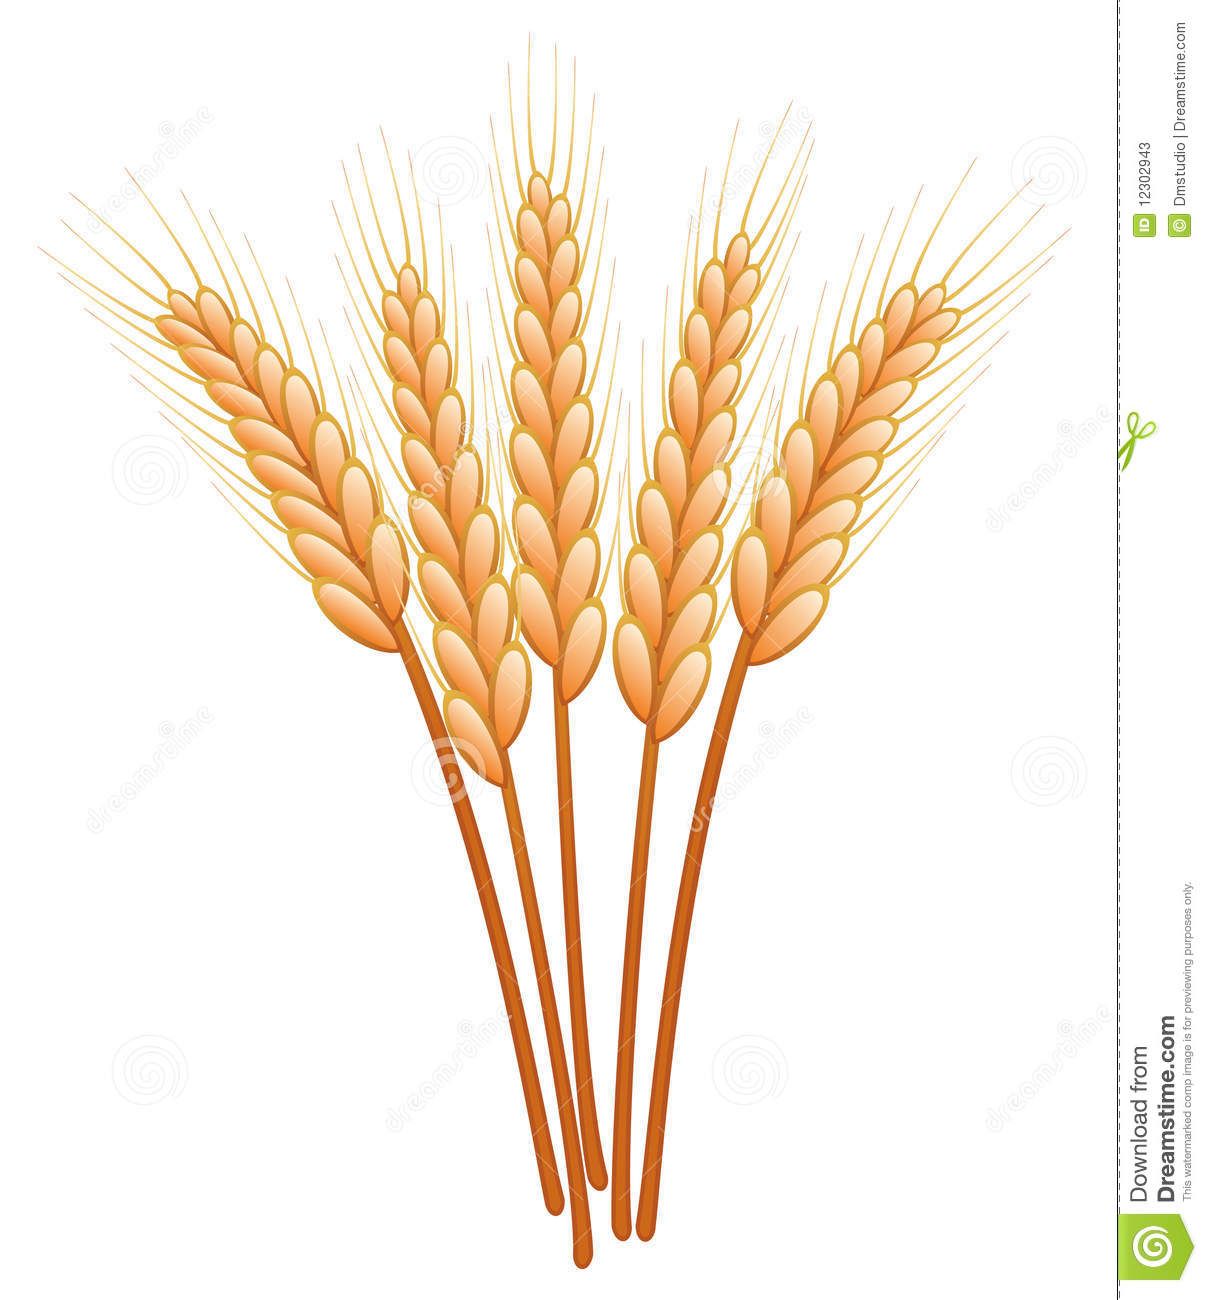 Wheat crops clipart.